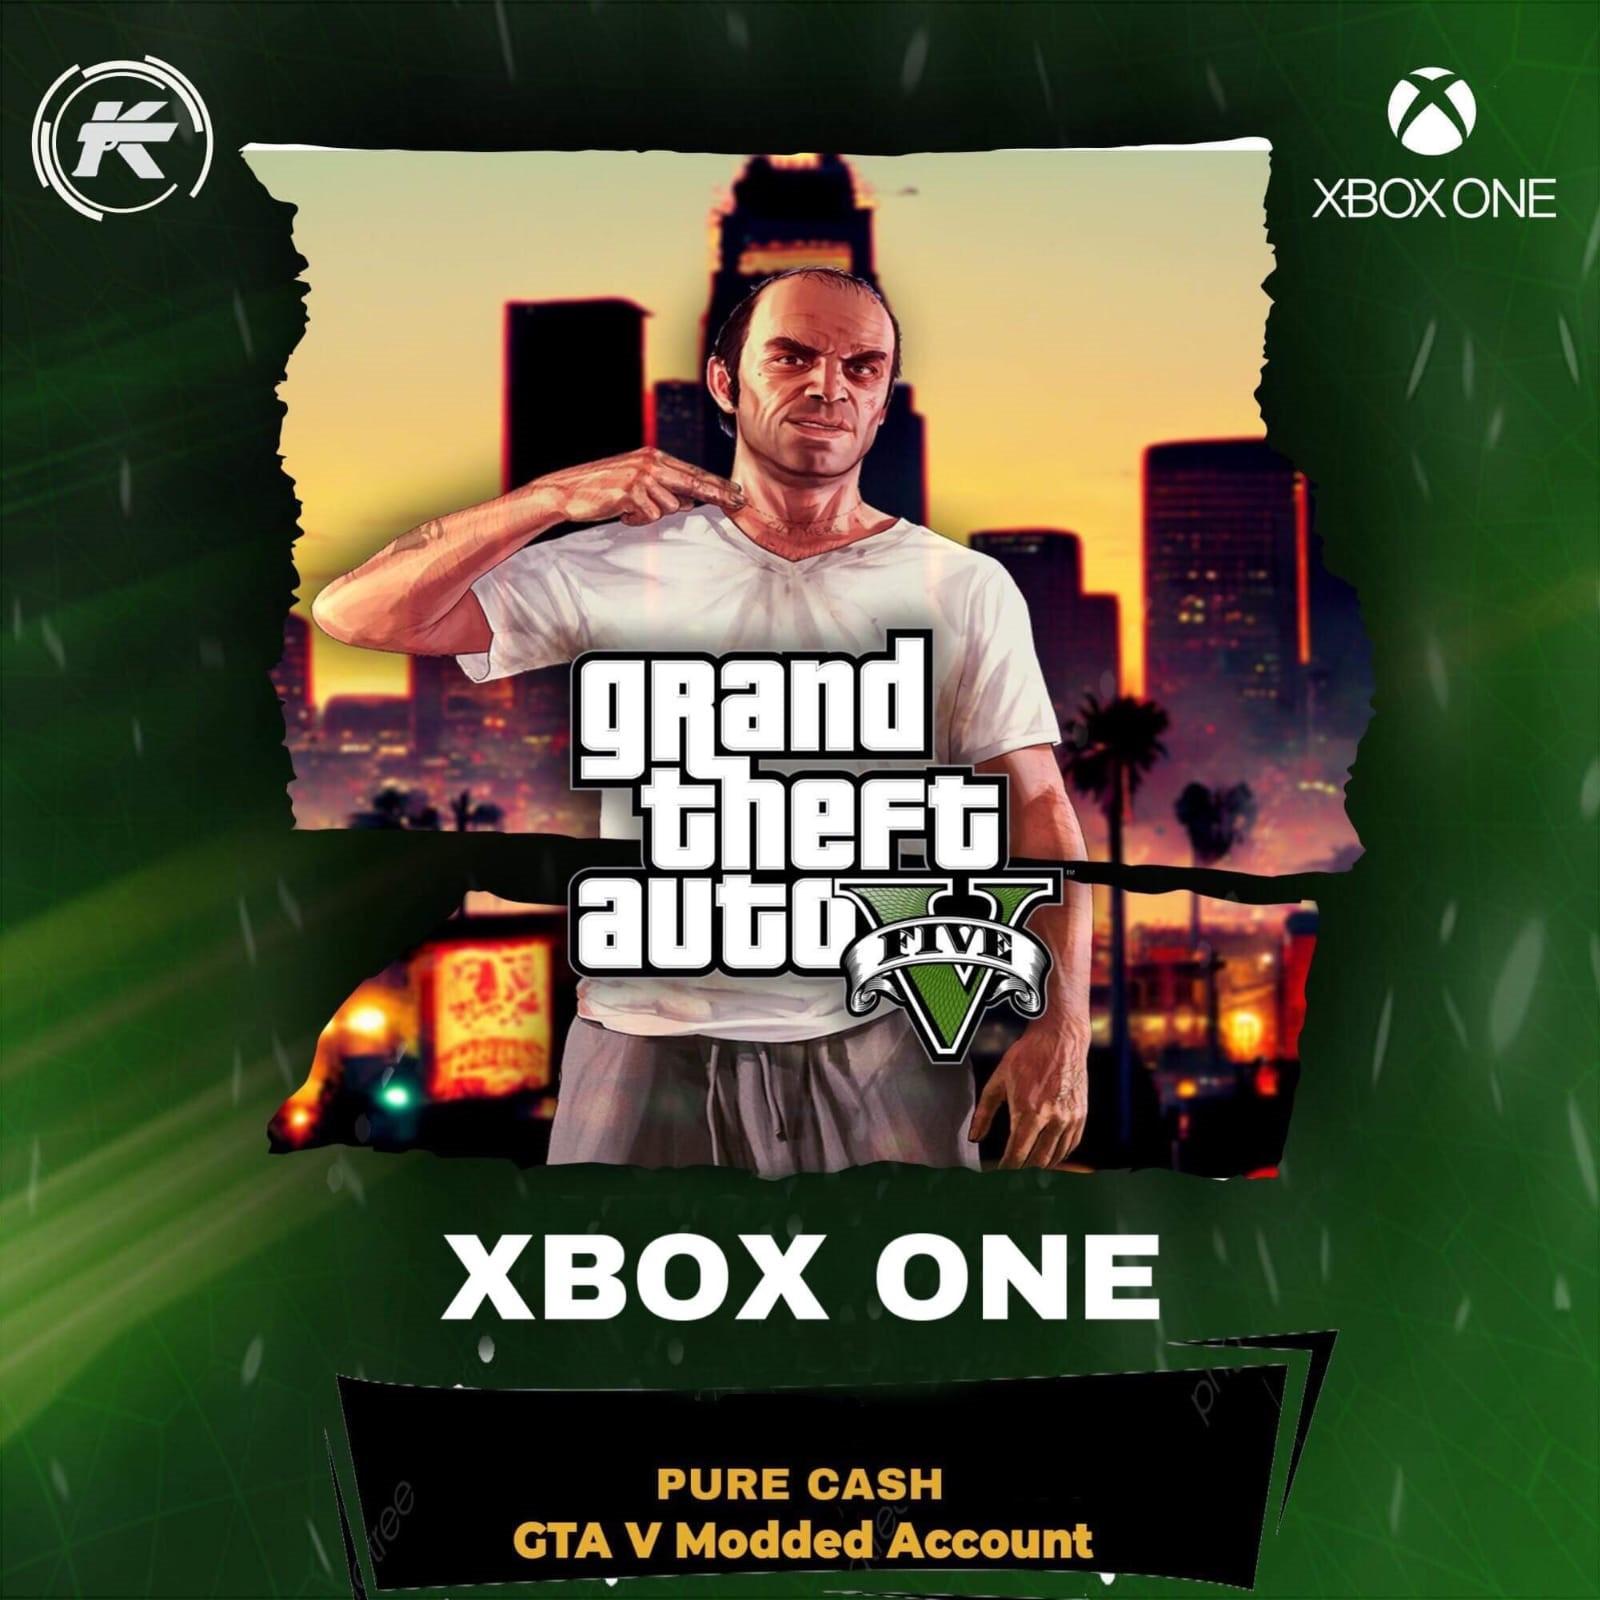 Gta 5 Xbox One Mod 7 Billion Rank 337 (24/7 INSTANT AUTOMATIC